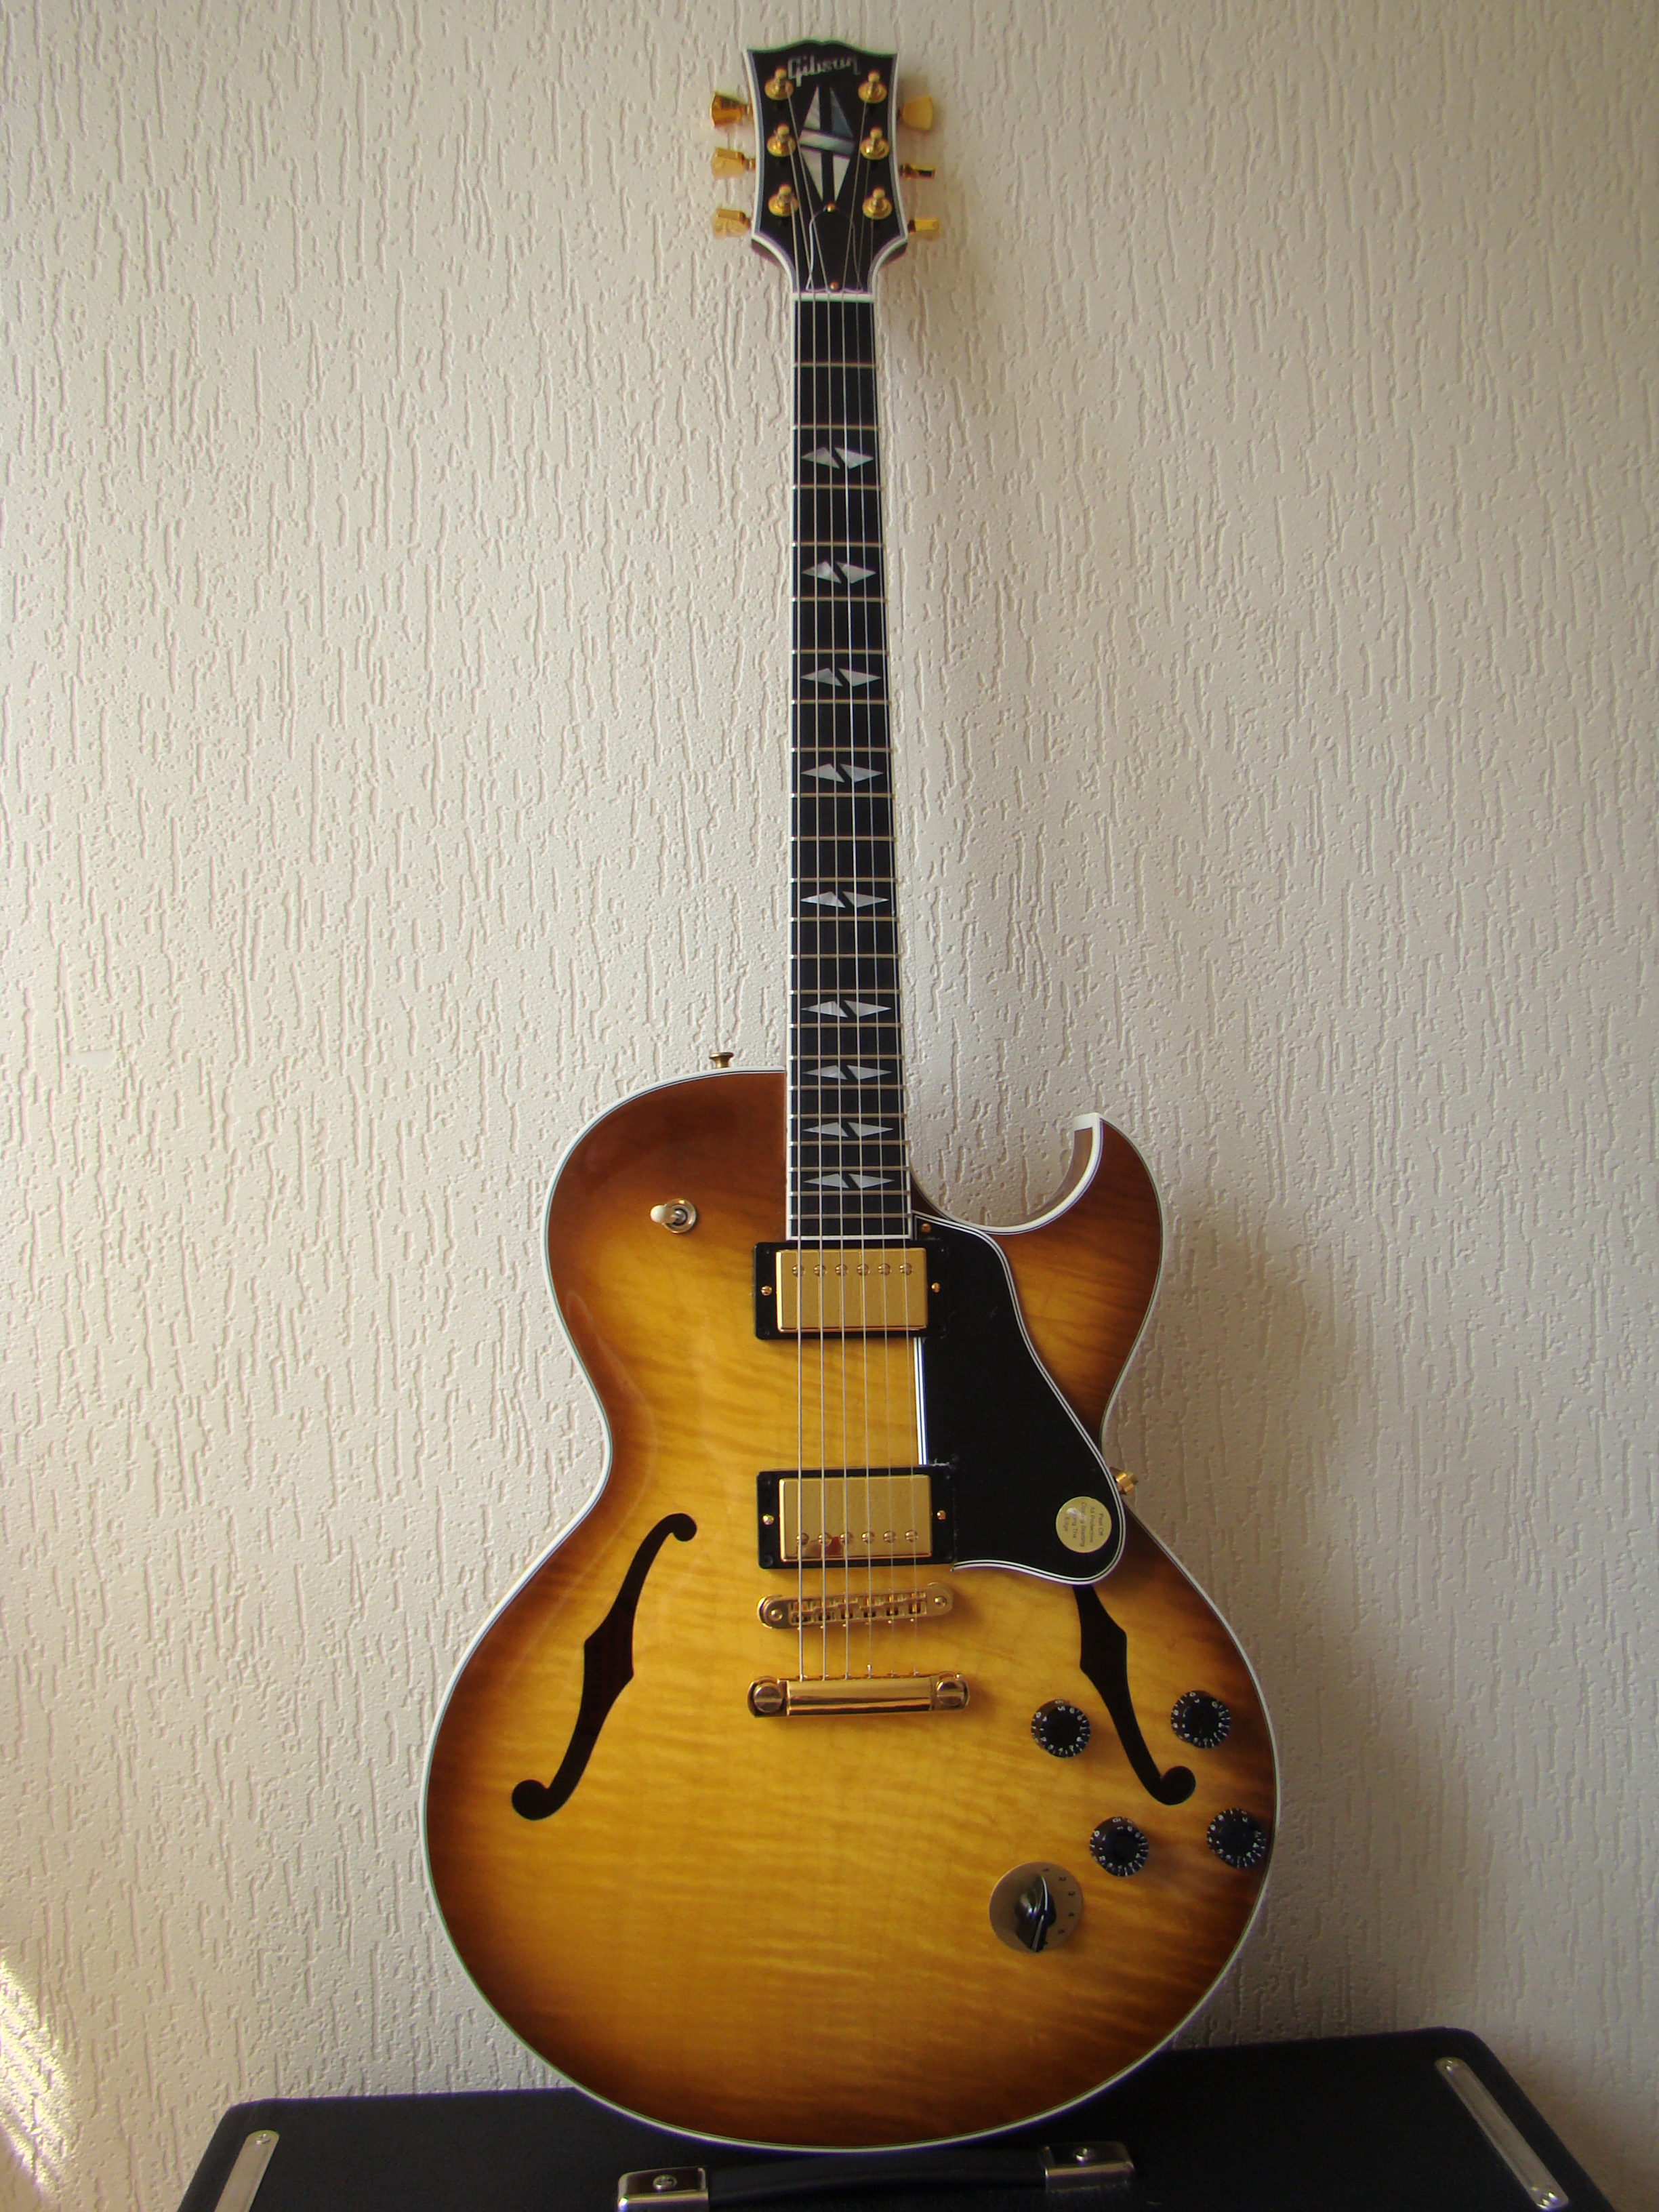 Images Gibson ES-137 Custom Gold HardwarePhoto introuvable                            ×                        {{ media.title }}Photo introuvable                            ×                        {{ media.title }}